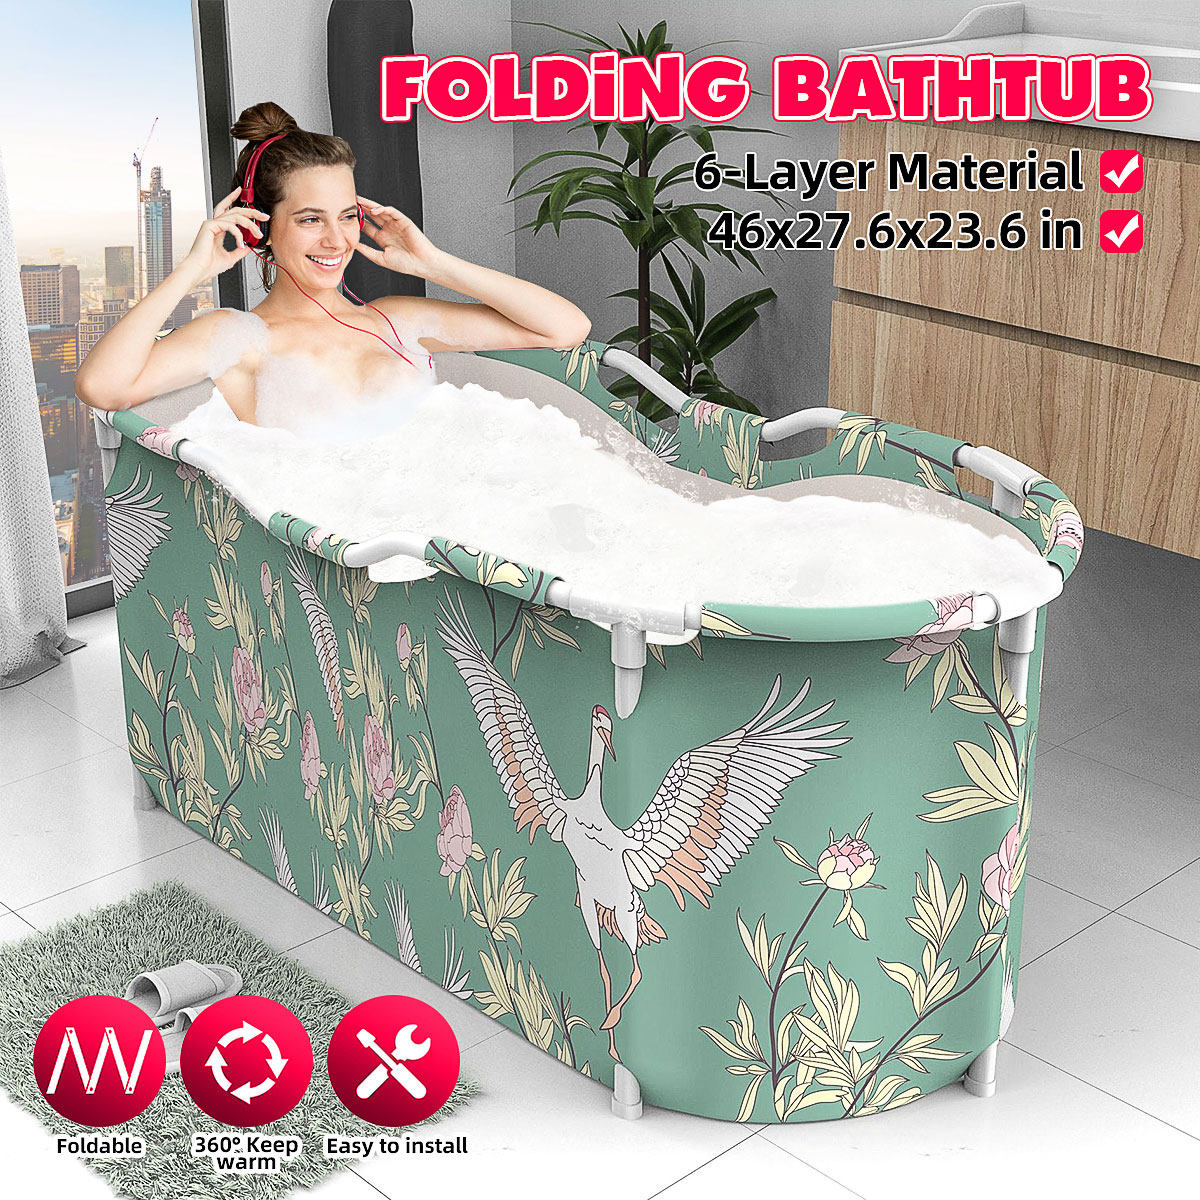 46x27.6x23.6 inch Portable Bathtub Folding Water Tub Indoor Outdoor Room Adult Spa Foldable Bath Bucket 13